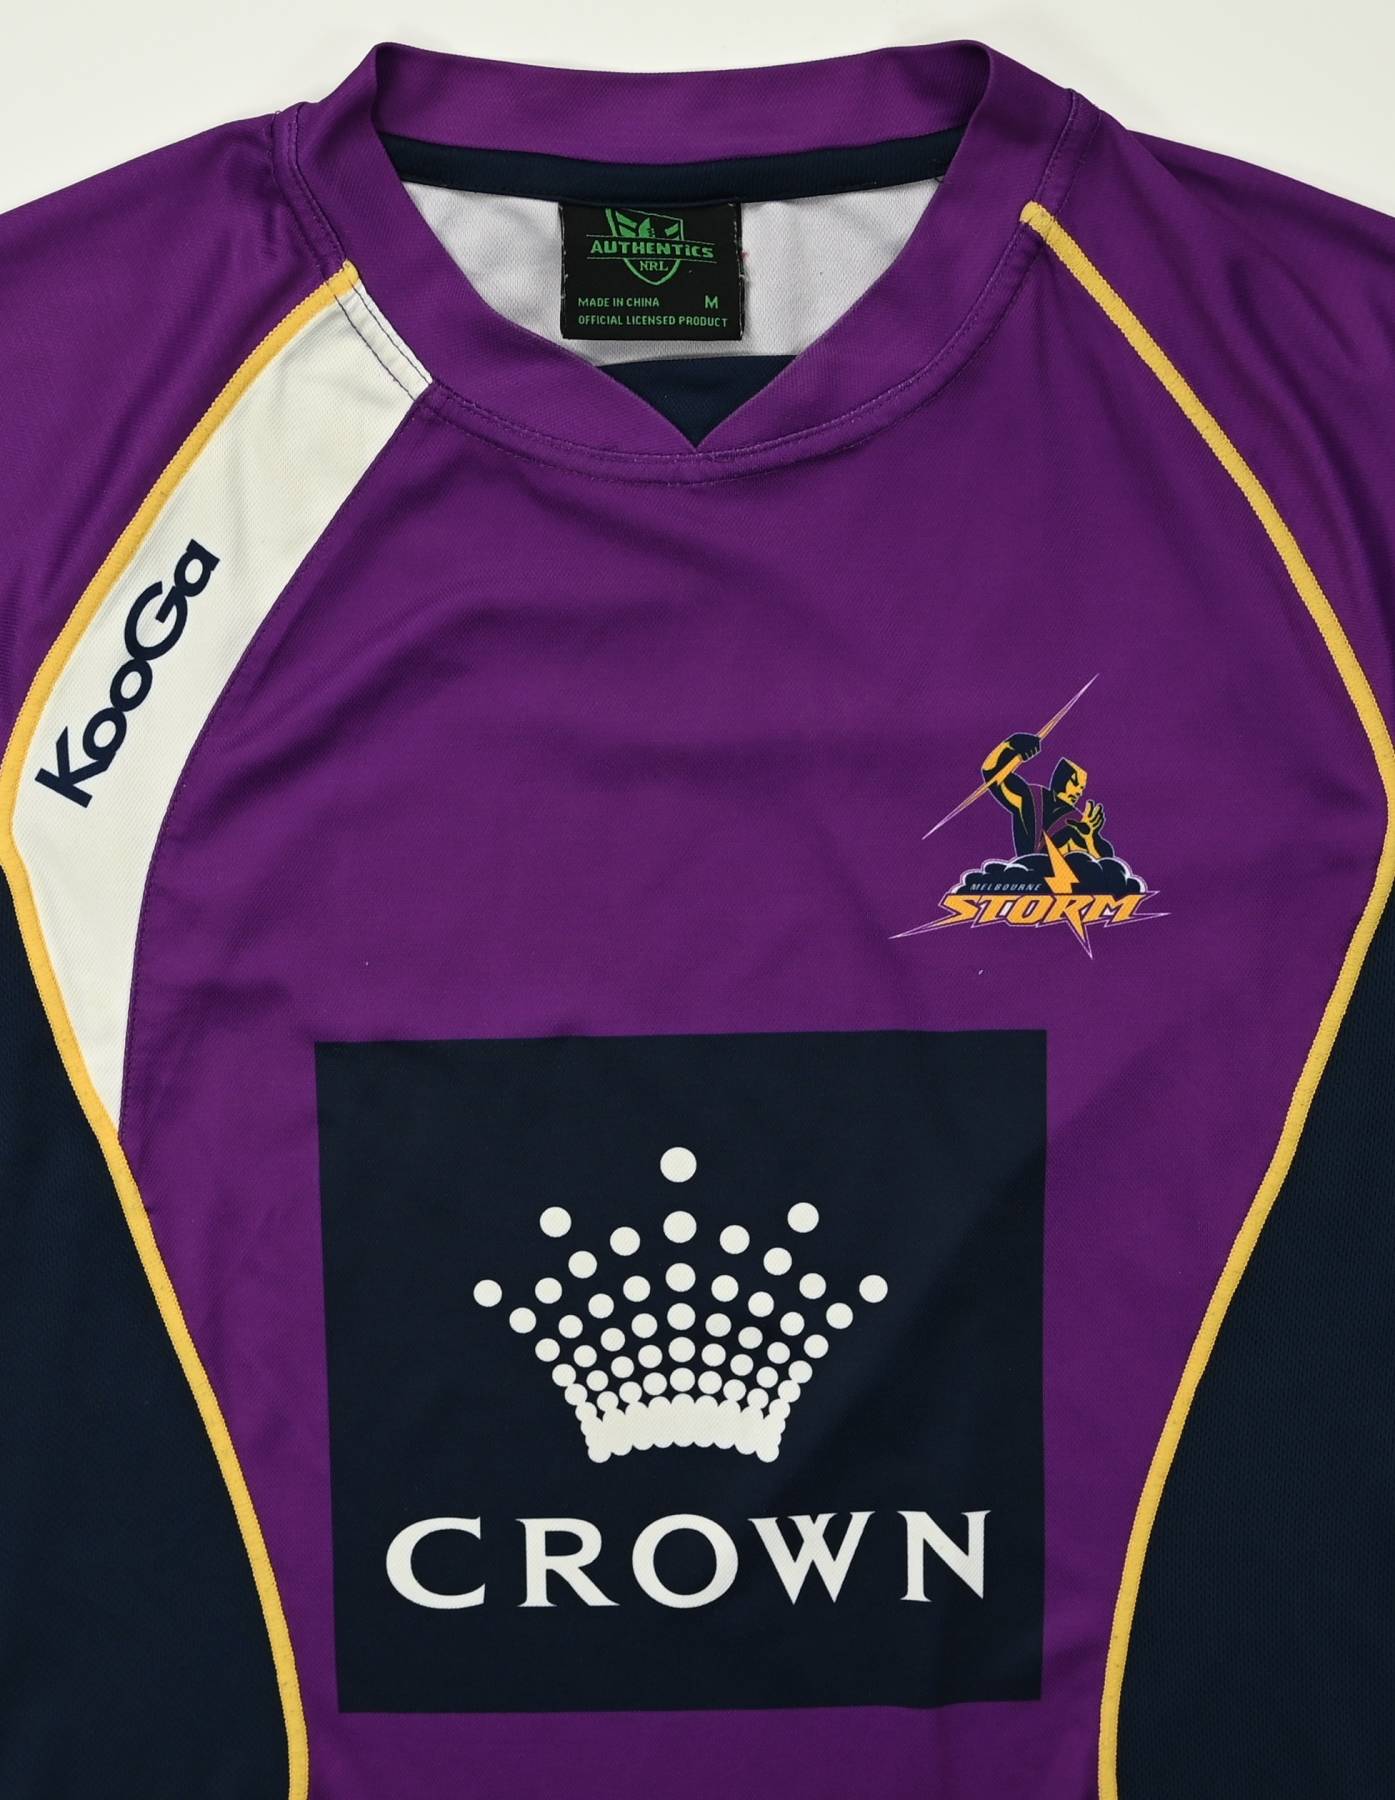 2003 Melbourne Storm Rugby League Shirt 2XL